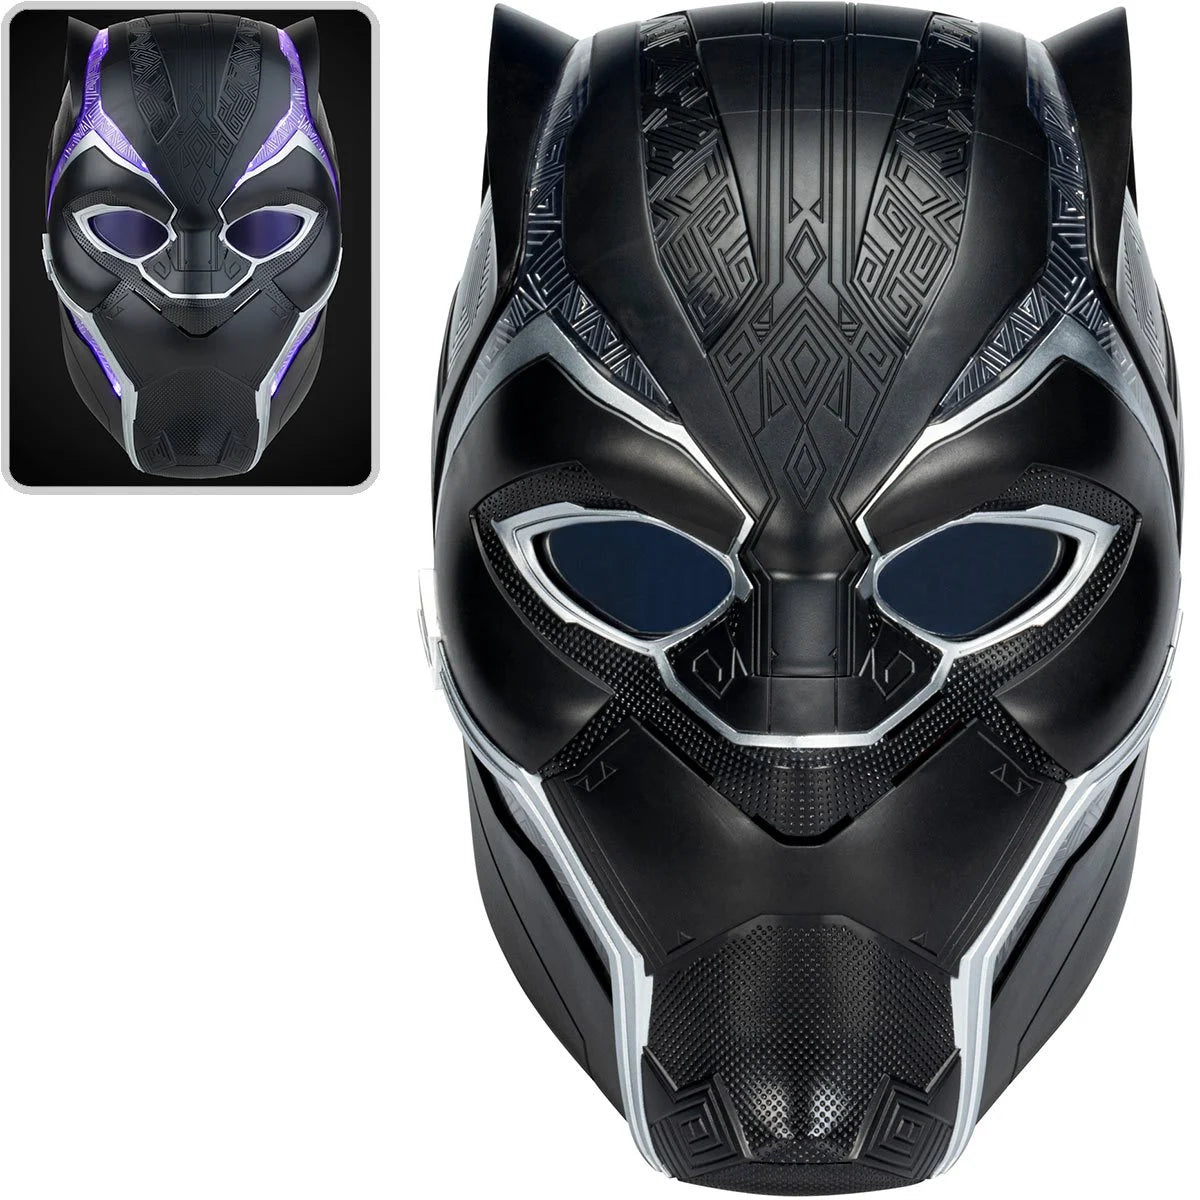 Marvel Legends Series Black Panther Helmet